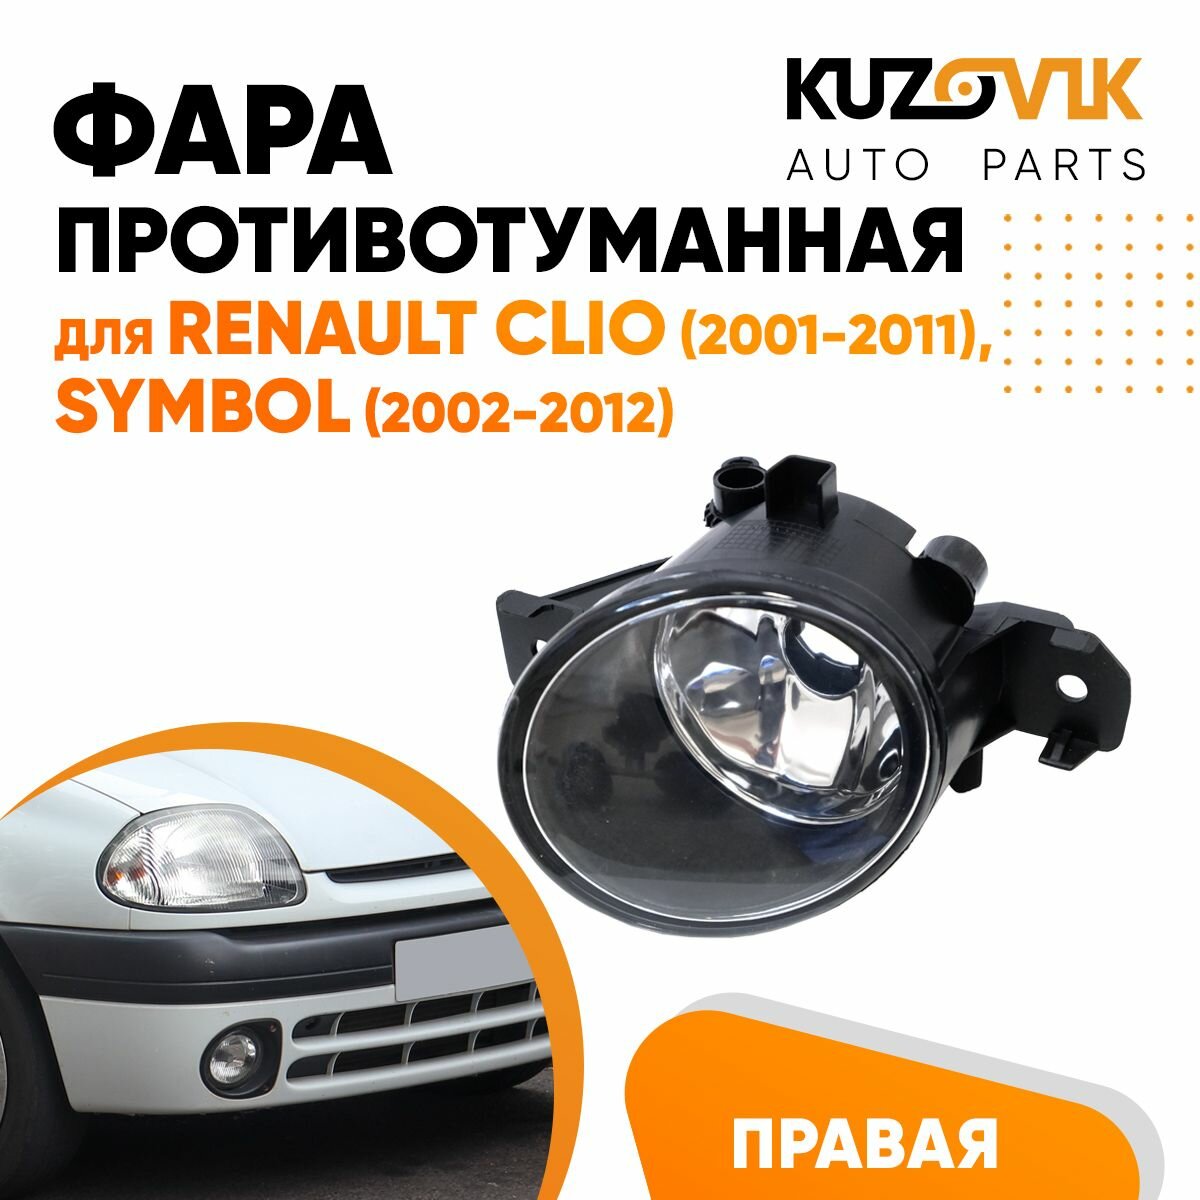 Противотуманная фара для Рено Клио Renault Clio (2001-2011), Симбол Symbol (2002-2012), правая, птф, туманка